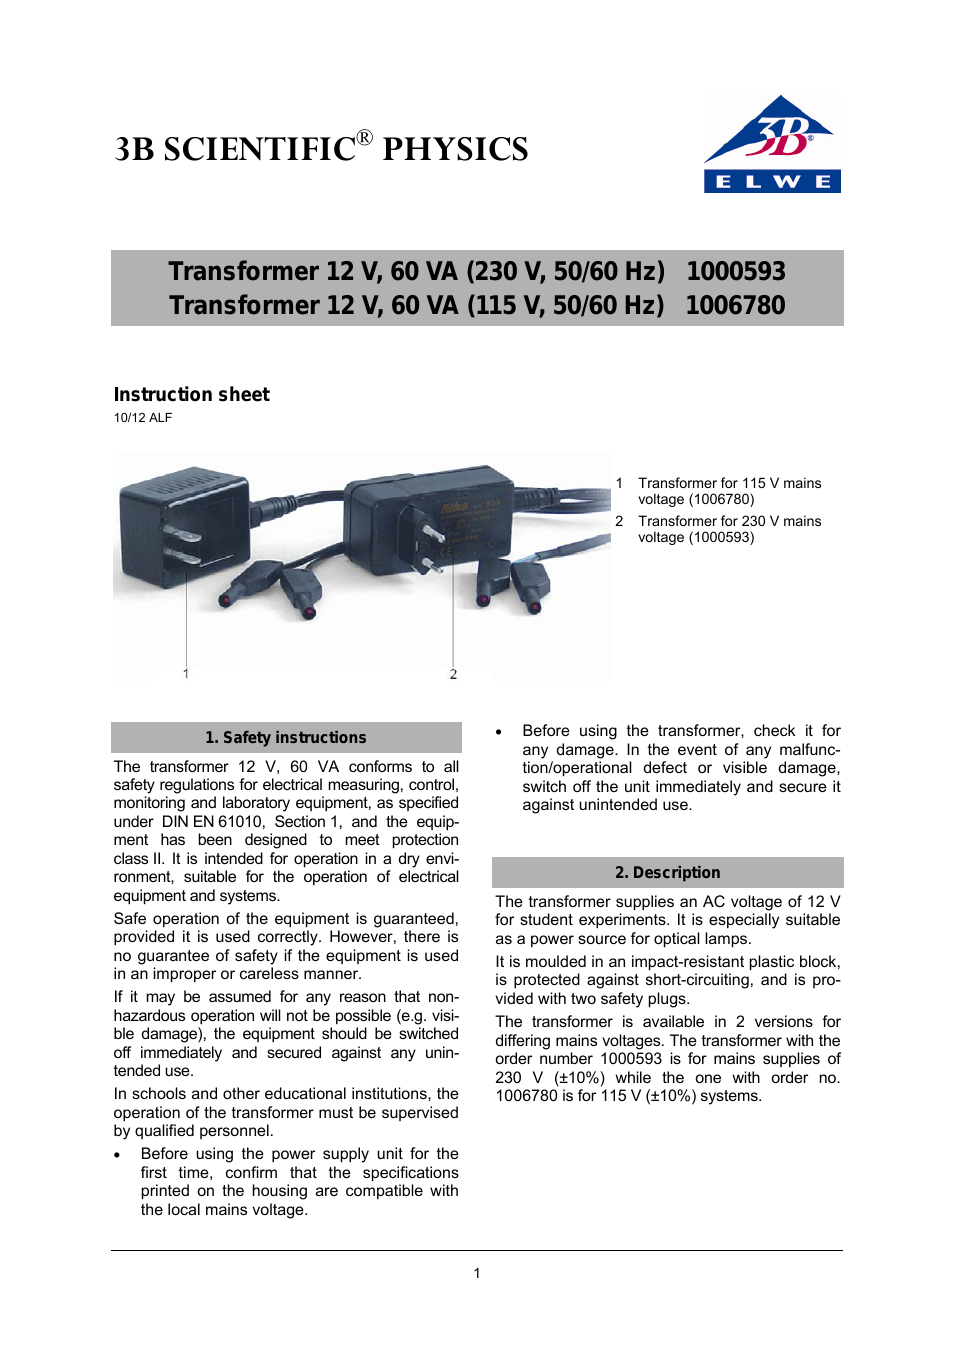 Transformer 12 V, 60 VA (115 V, 50__60 Hz)